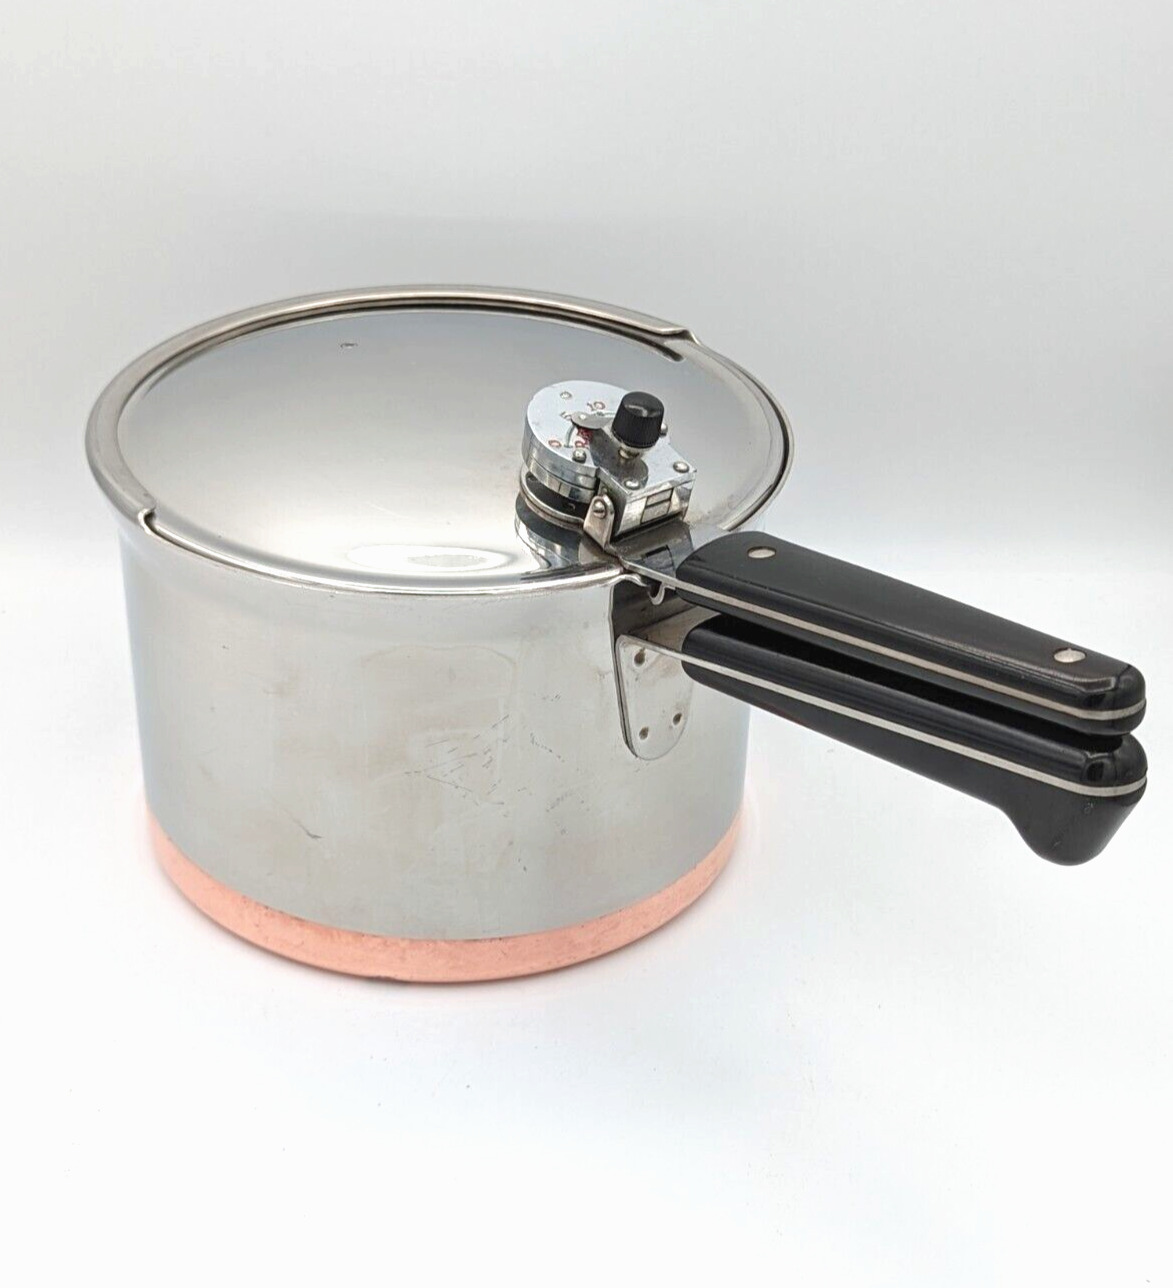 Vintage Revere Ware 1801 Copper Clad Pressure Cooker 4Qt Pot Excellent Condition